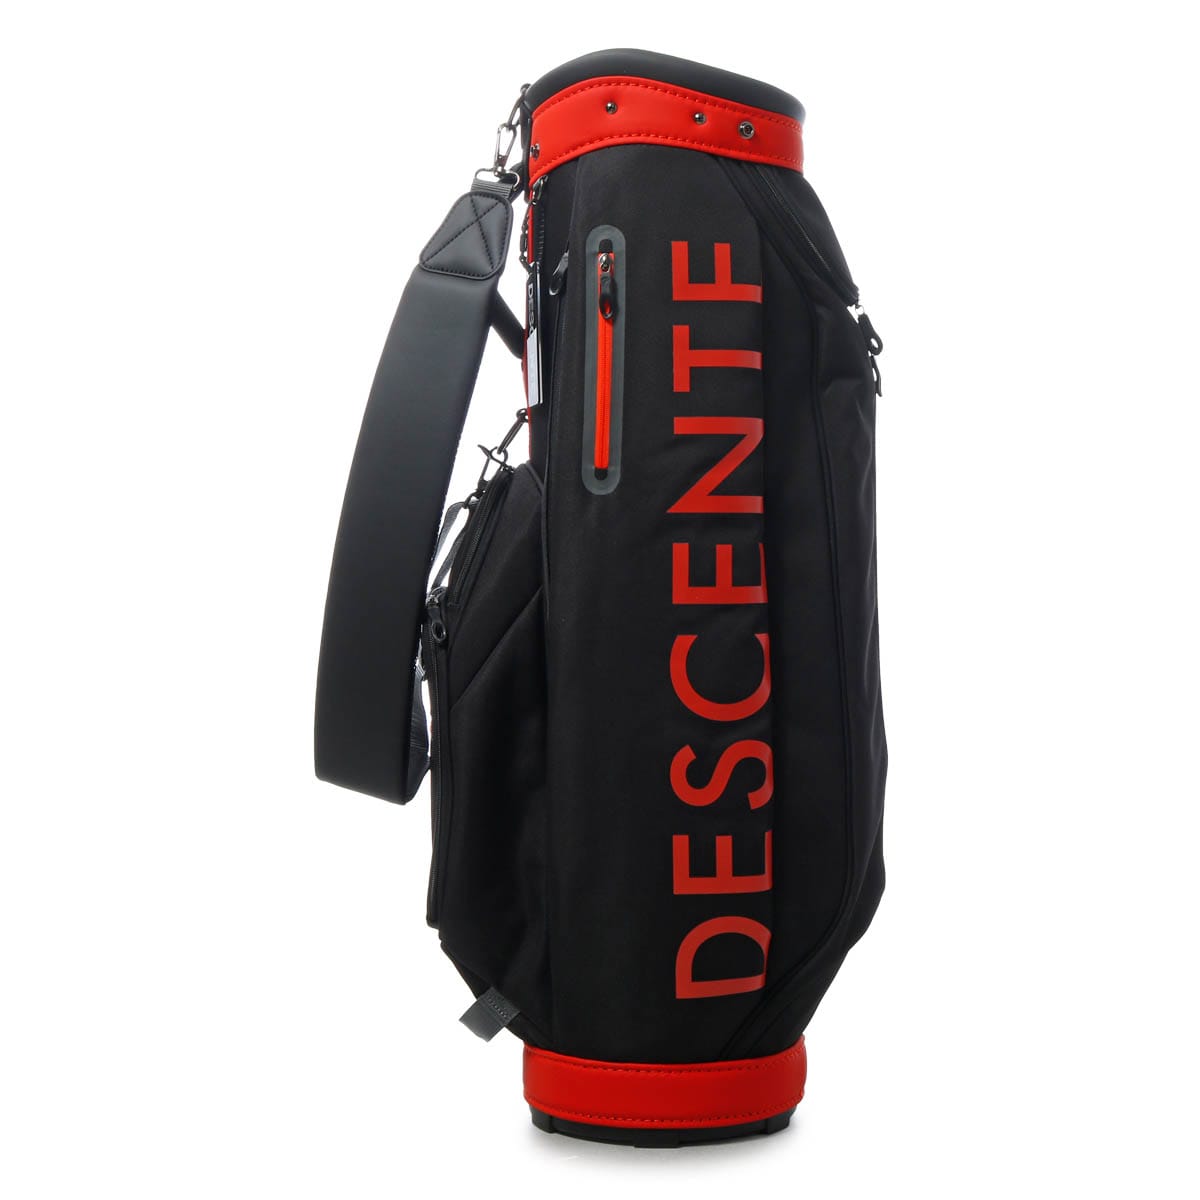 デサント ゴルフ キャディバッグ カート型 6分割 9型 47インチ対応 3.0kg メンズ DQBVJJ03 DESCENTE Move Sport  ゴルフバッグ スポーツ 軽量